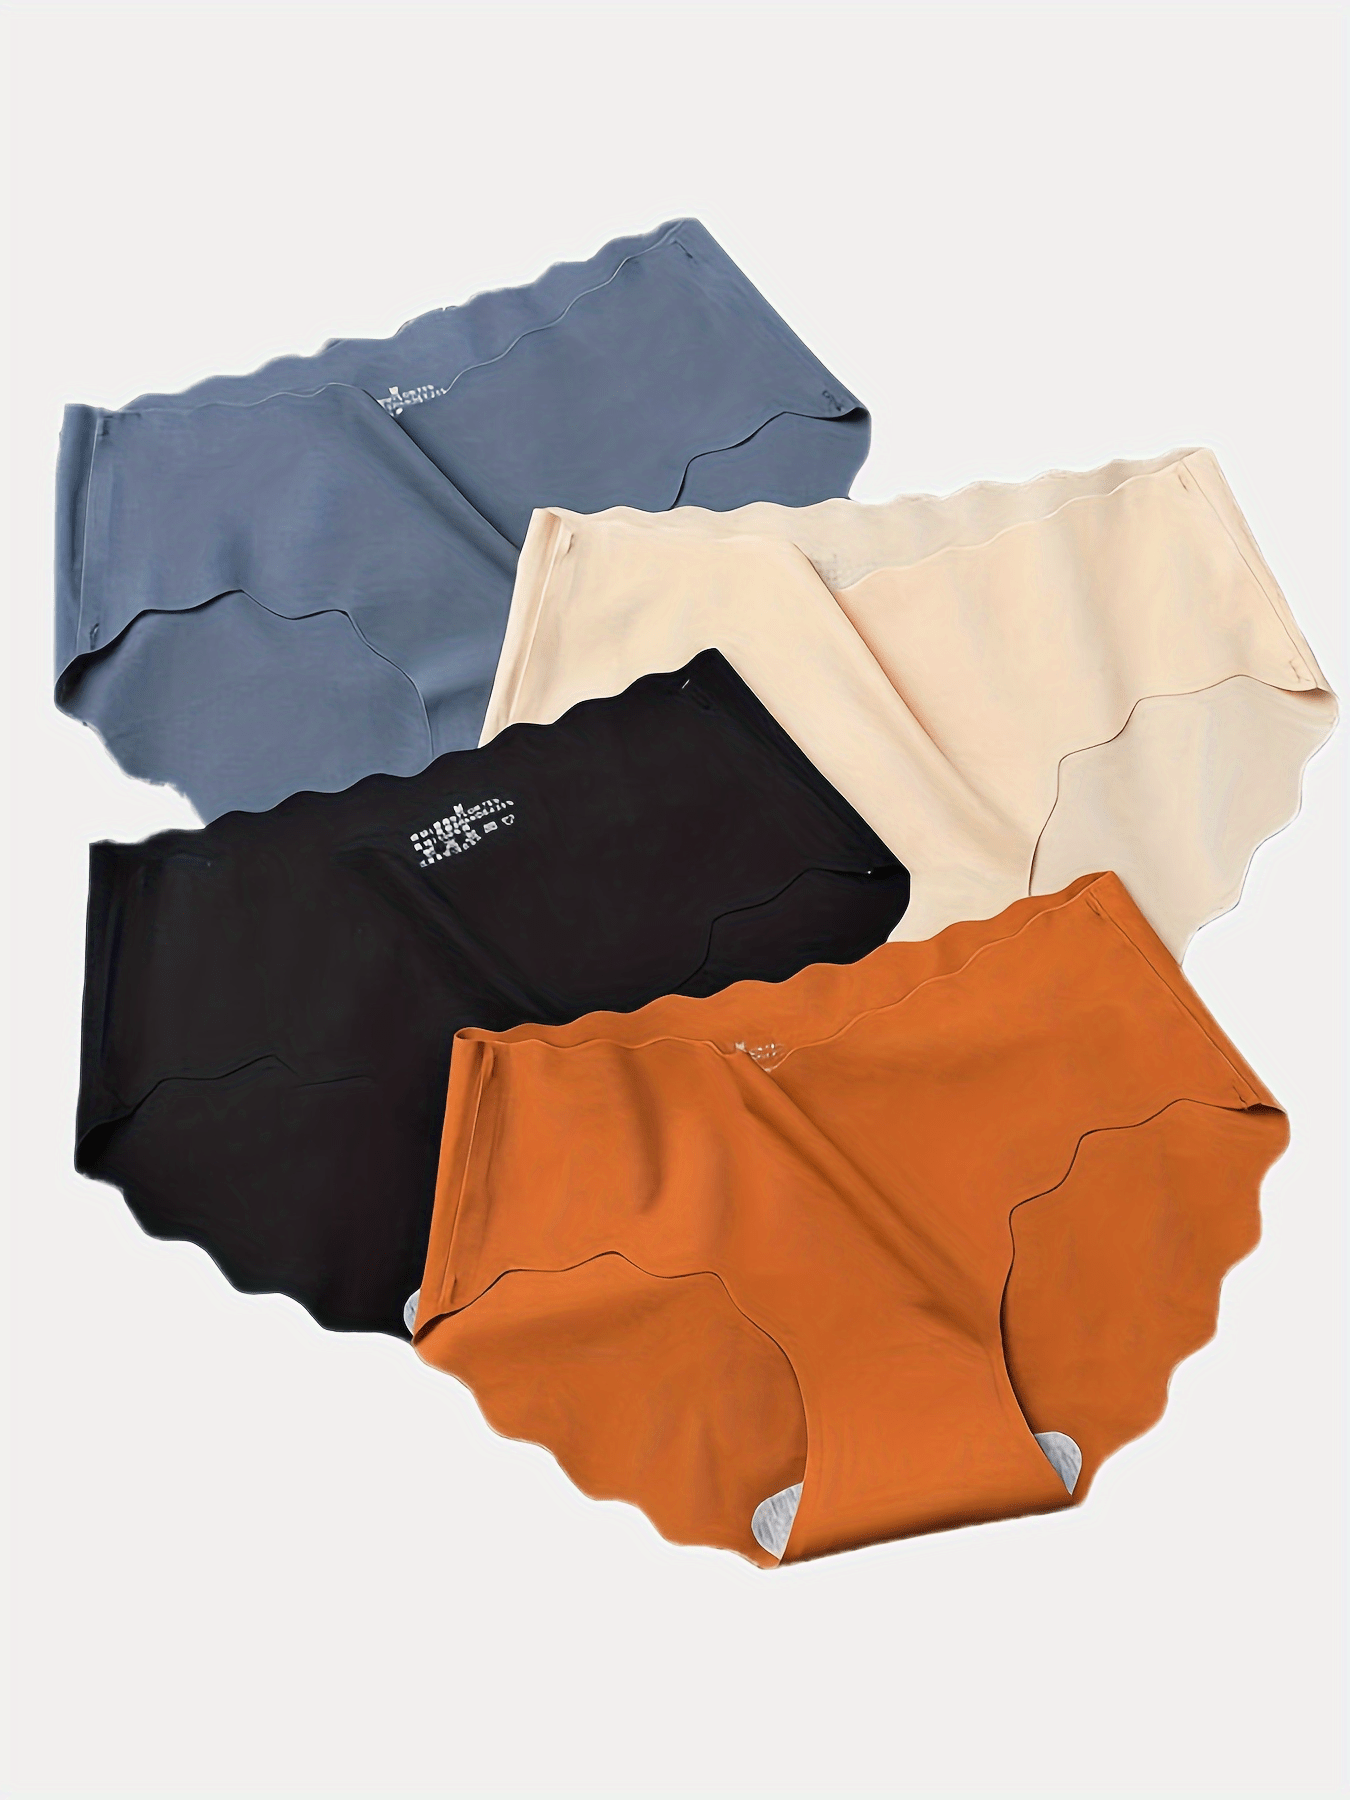 NAUTICA 4pcs Men's Cotton Stretch Briefs Underwear 